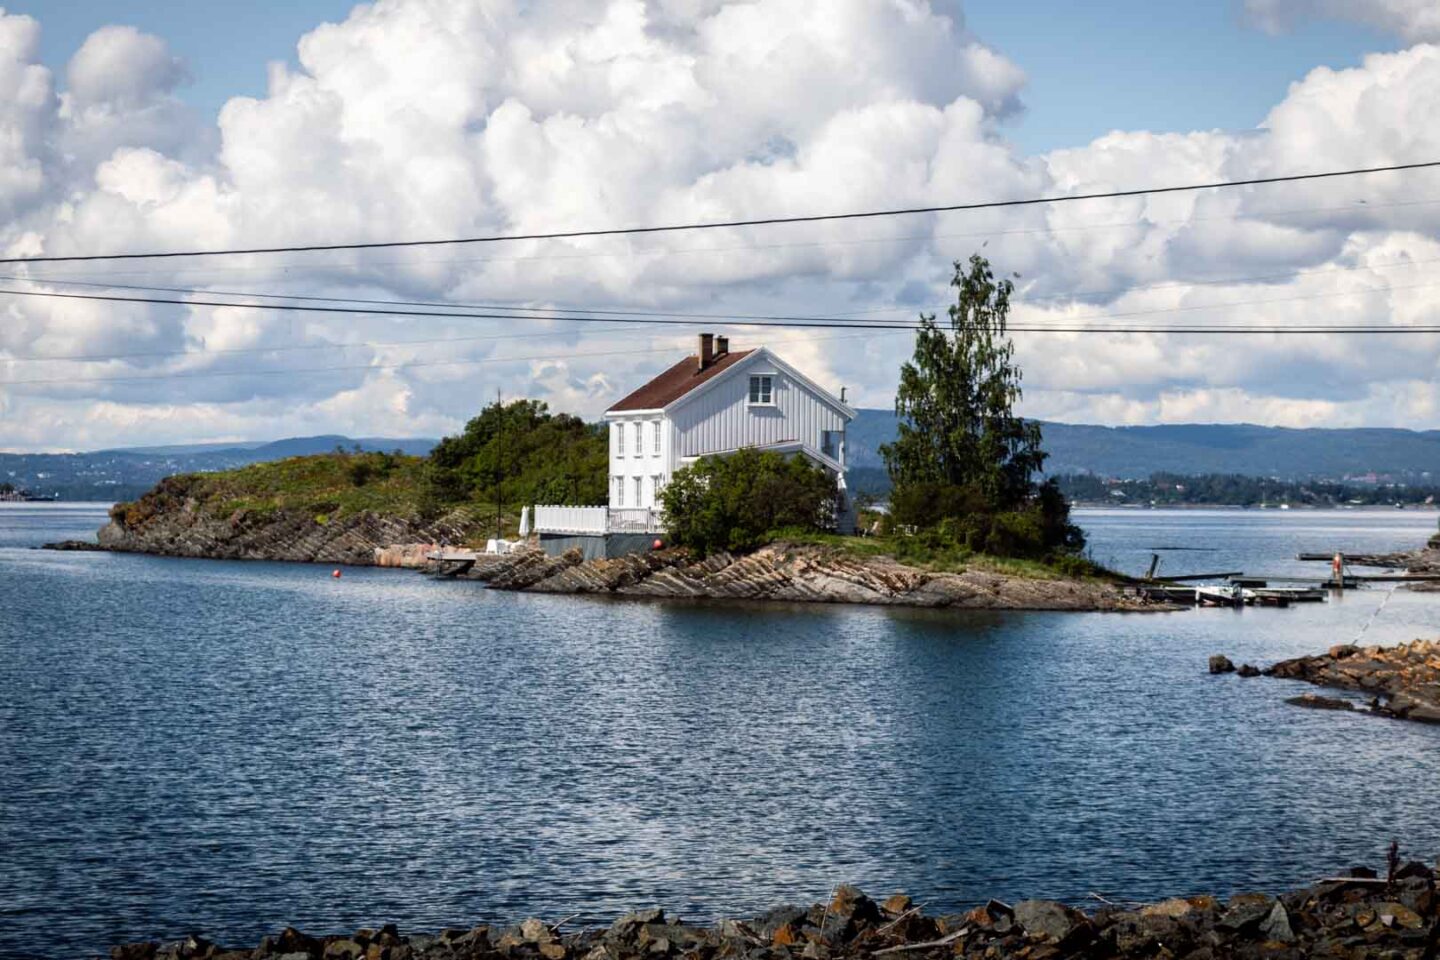 Oslofjord, Heggholmen island